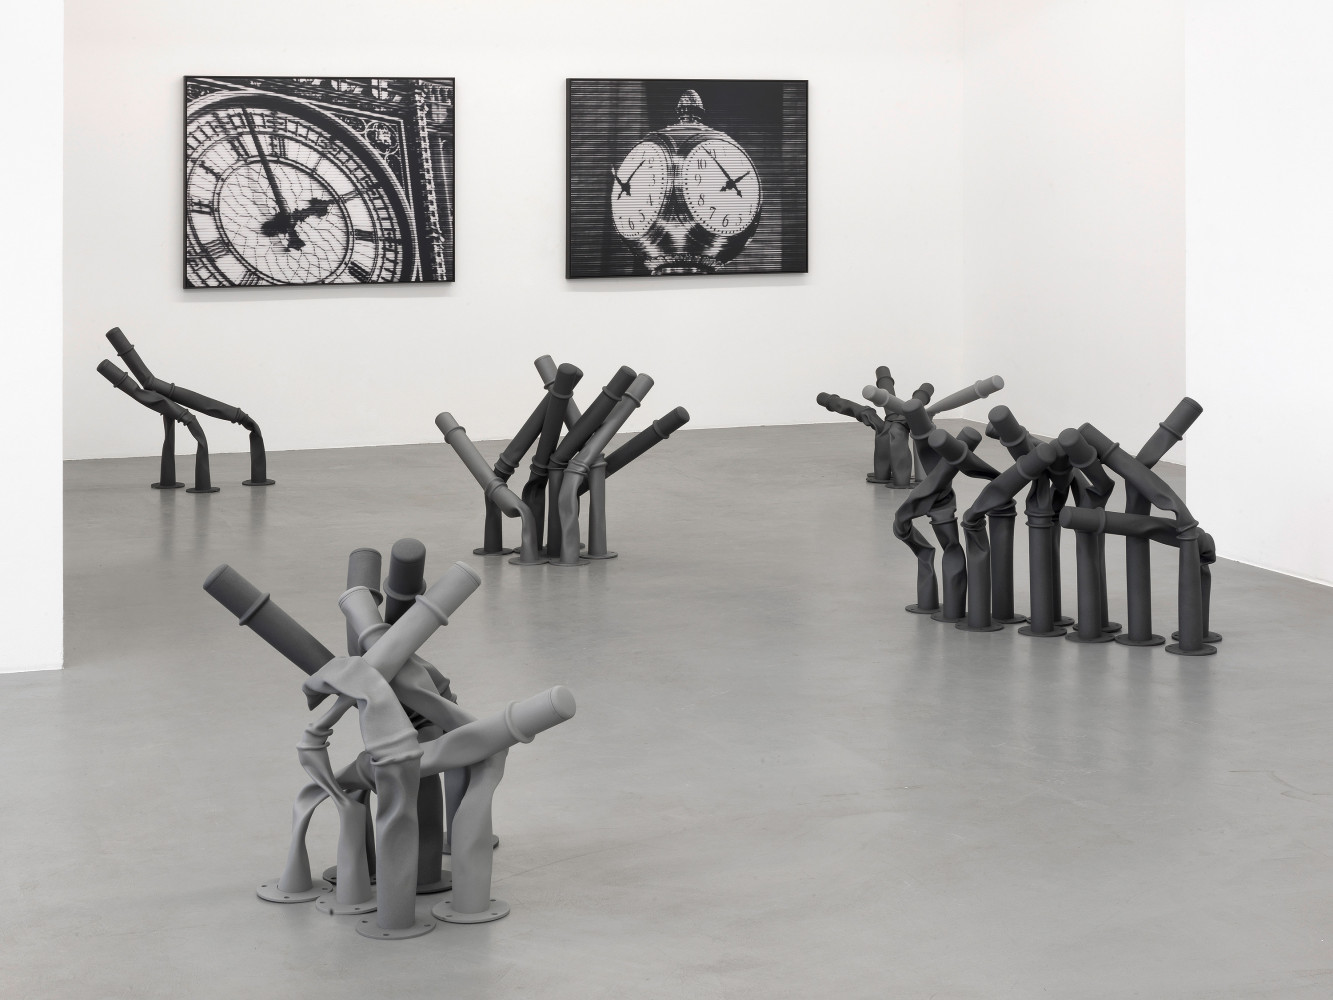 Bettina Pousttchi, ‘Off the Clock’, Installationsansicht, Buchmann Galerie, 2013